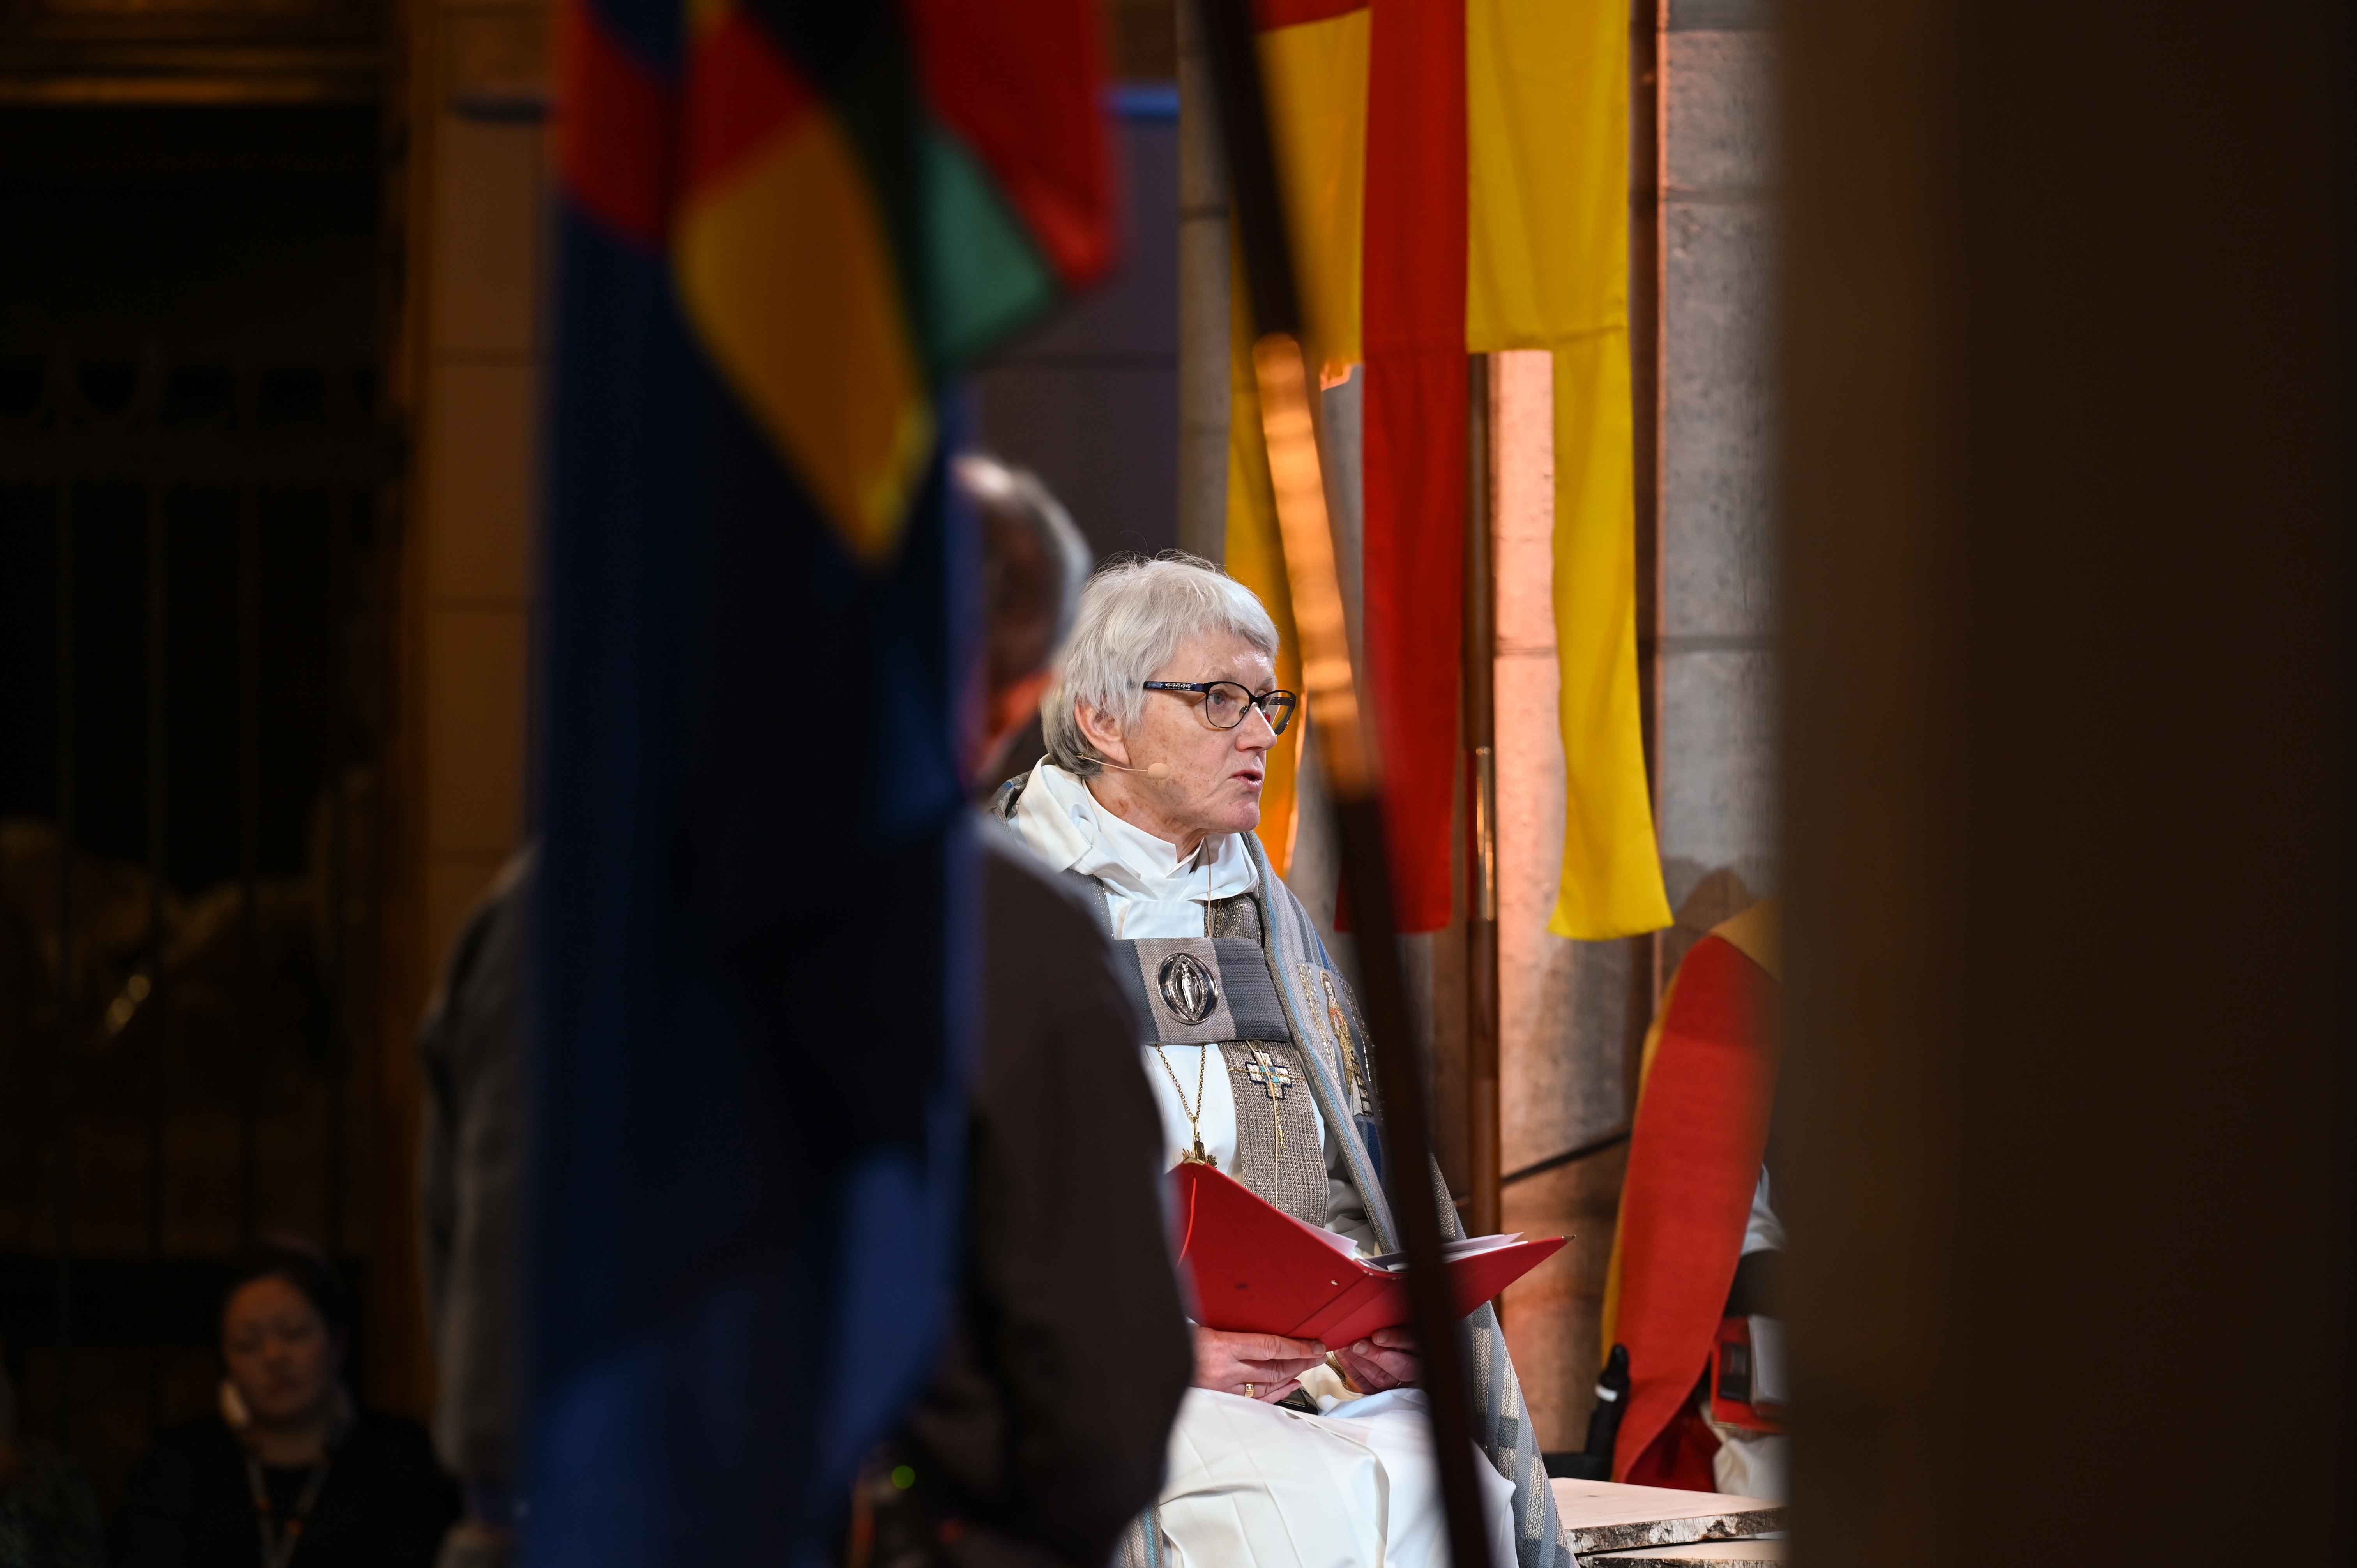 Ärkebiskop Antje Jackelén läser högt i Uppsala domkyrka omgiven av Svenska kyrkans och den samiska flaggan.